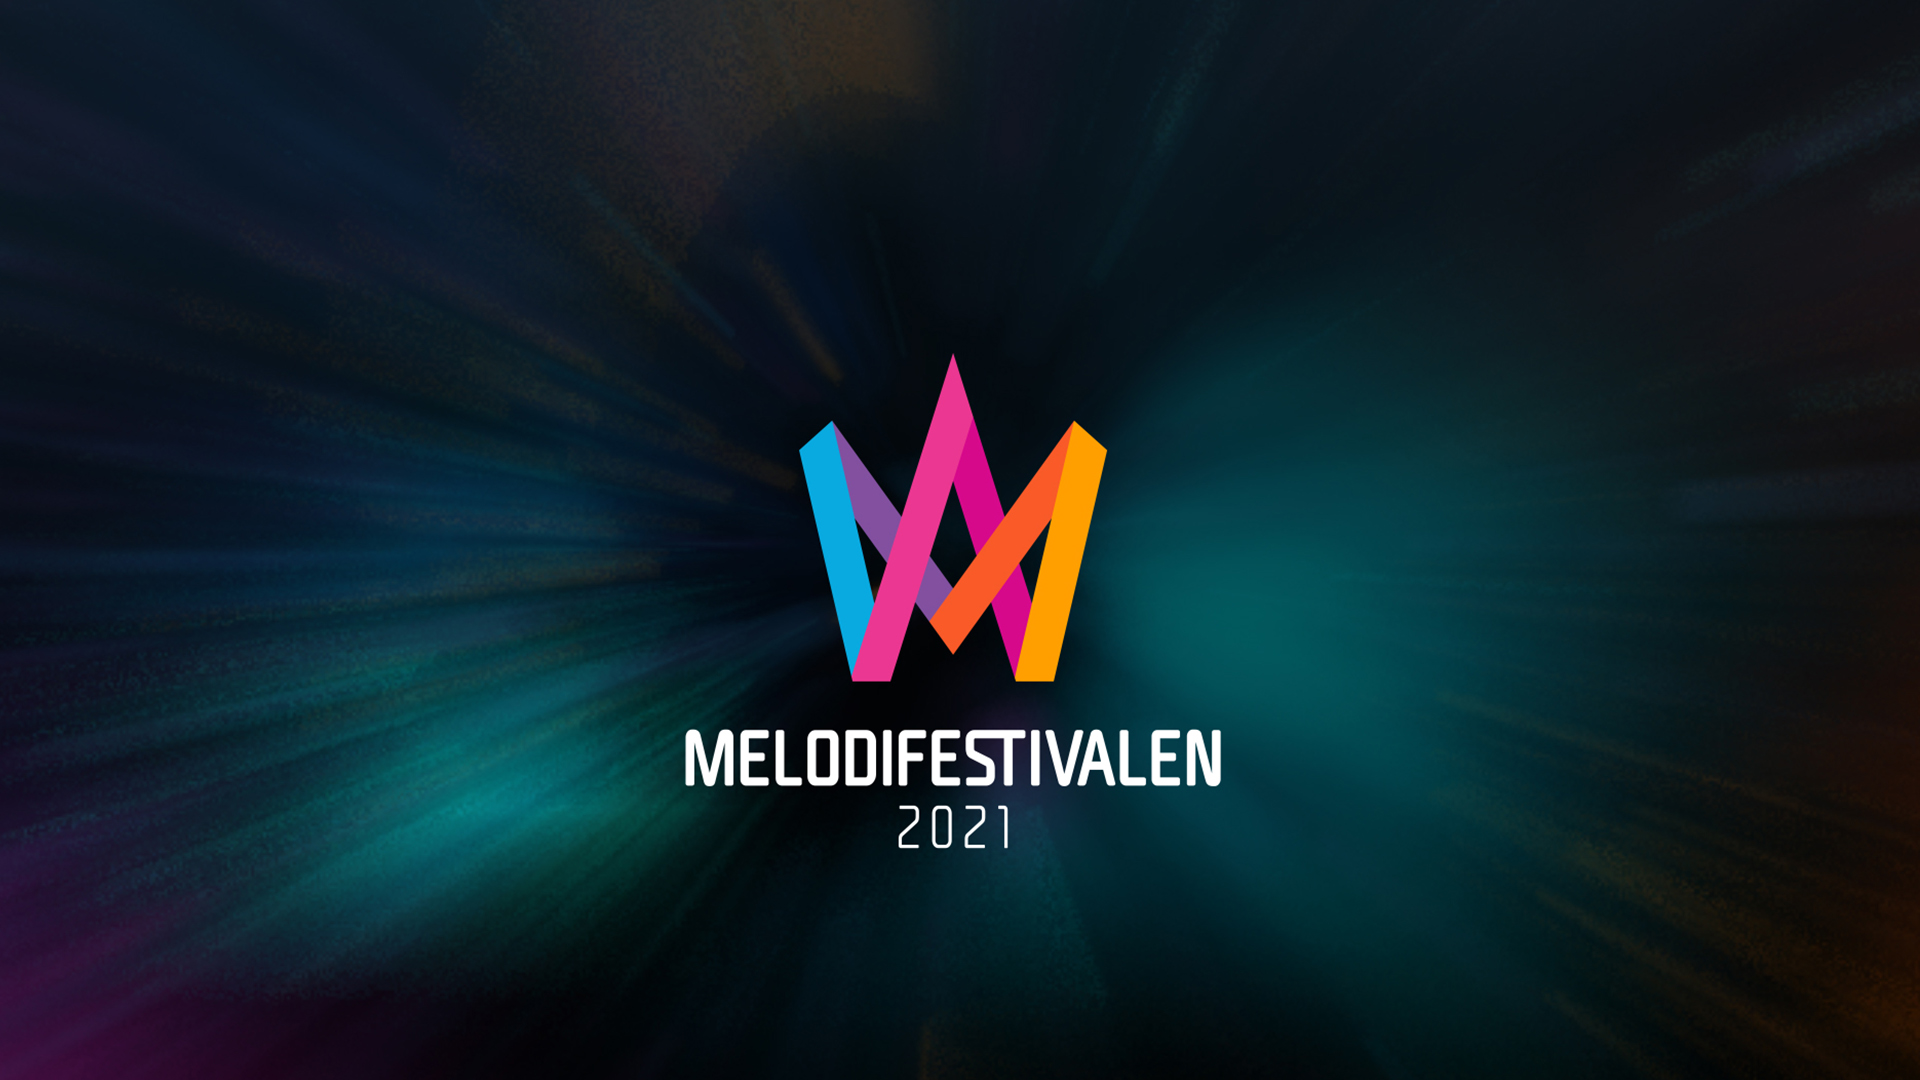 Σουηδία: Ανακοινώθηκαν οι χώρες των επιτροπών του Melodifestivalen 2021